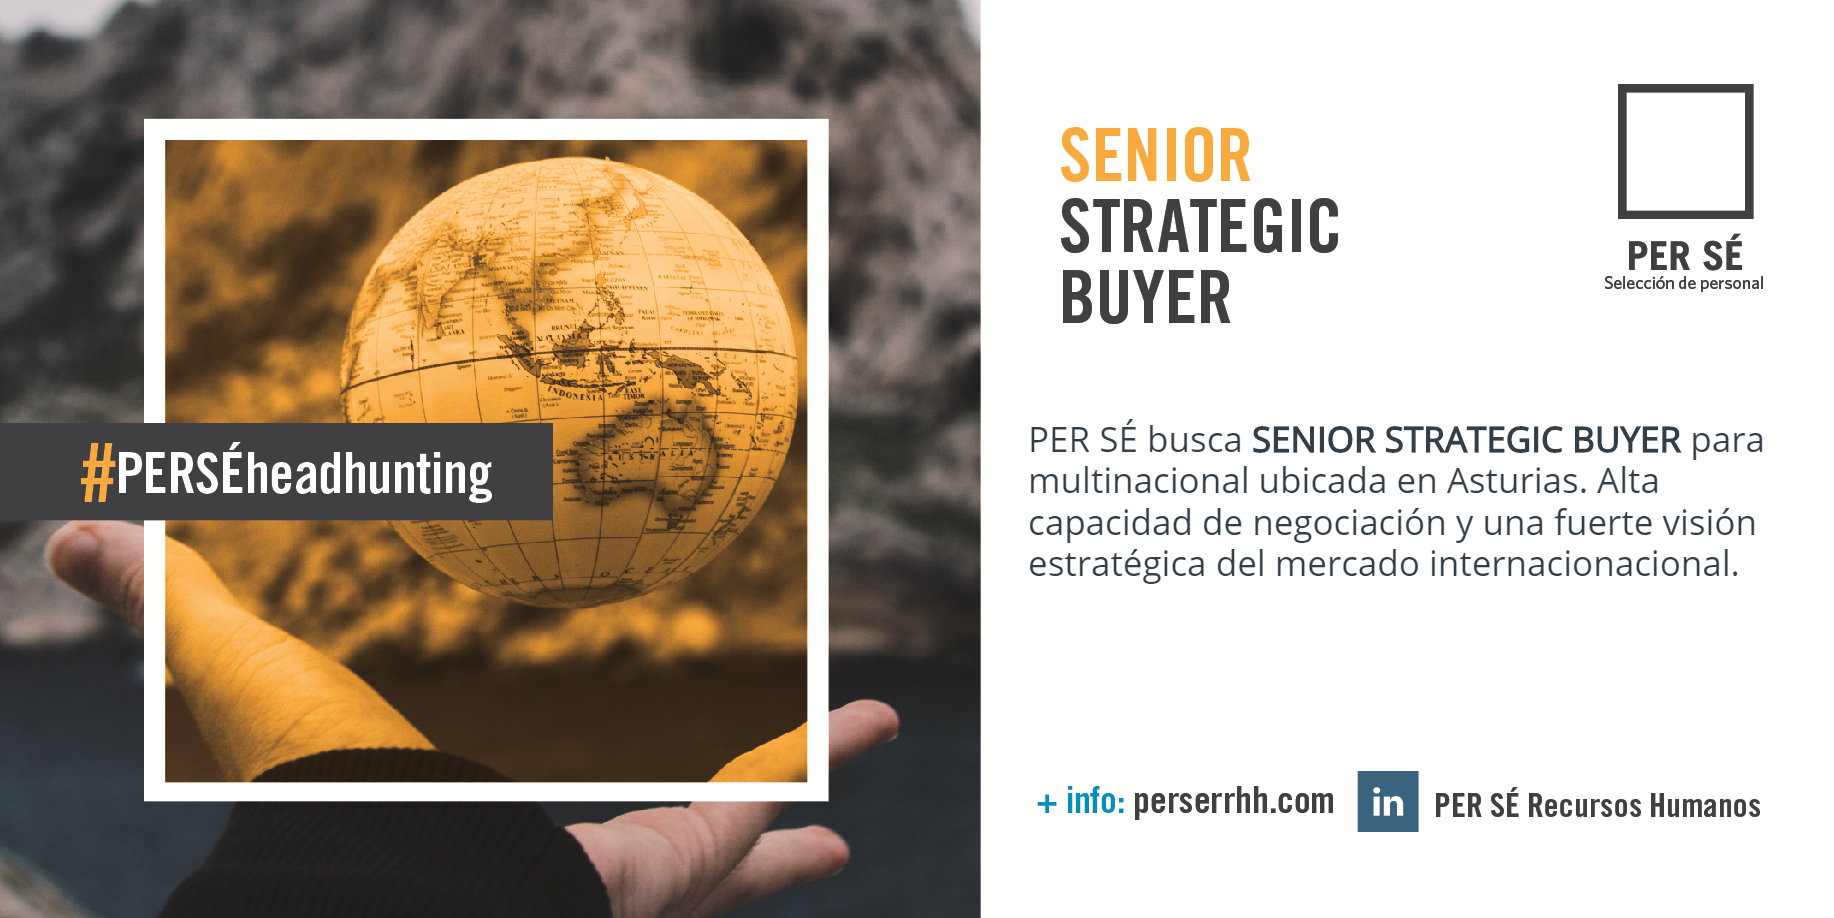 Senior Strategic Buyer